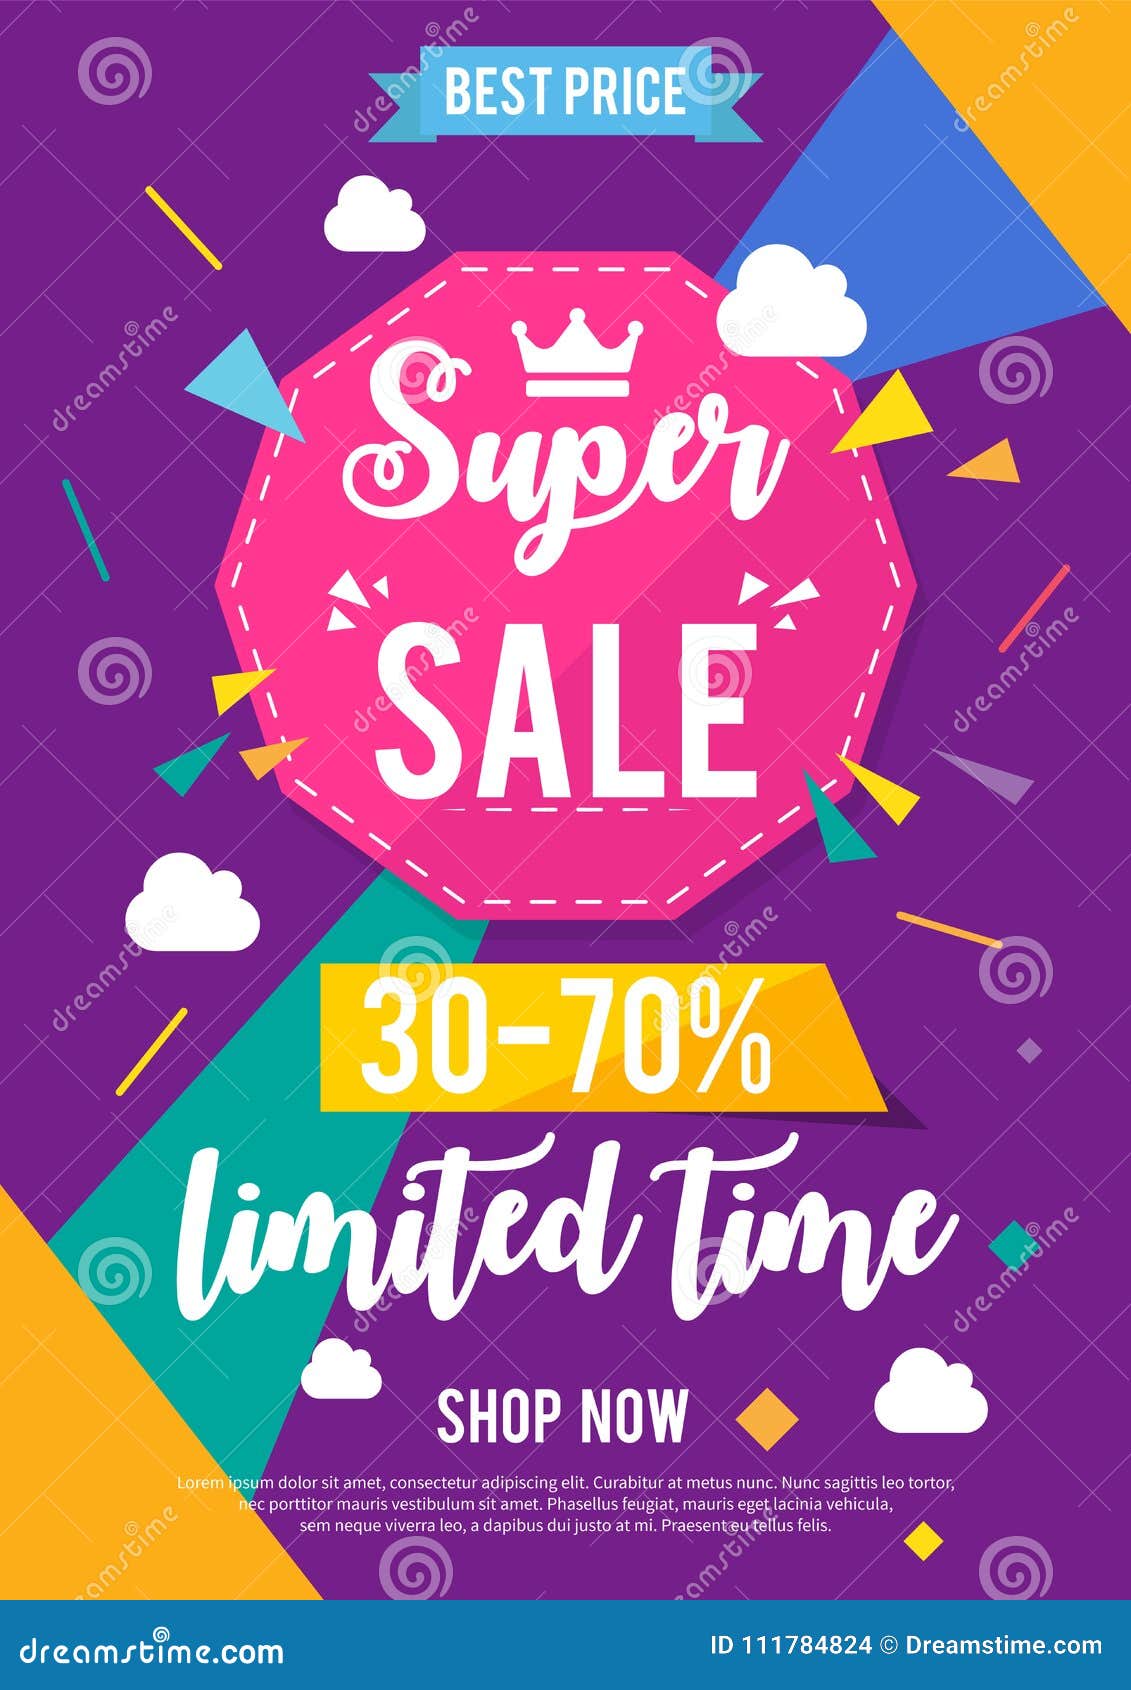 Super Sale Limited Time Vector Illustration Stock Illustration